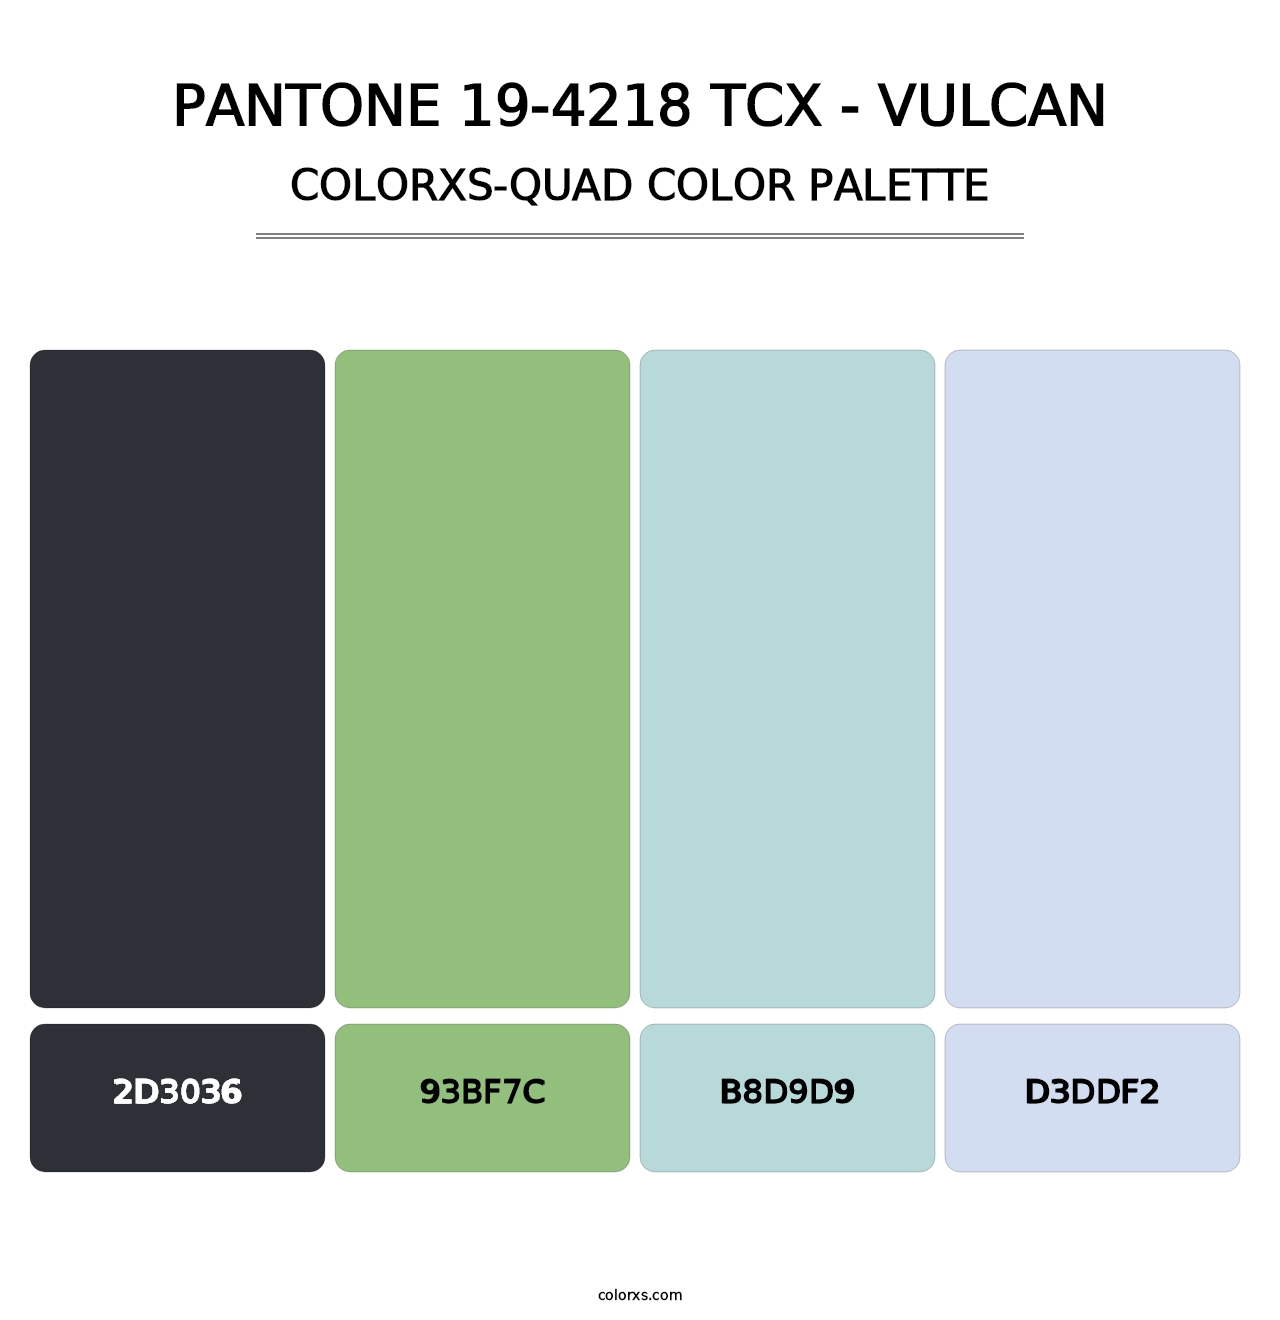 PANTONE 19-4218 TCX - Vulcan - Colorxs Quad Palette